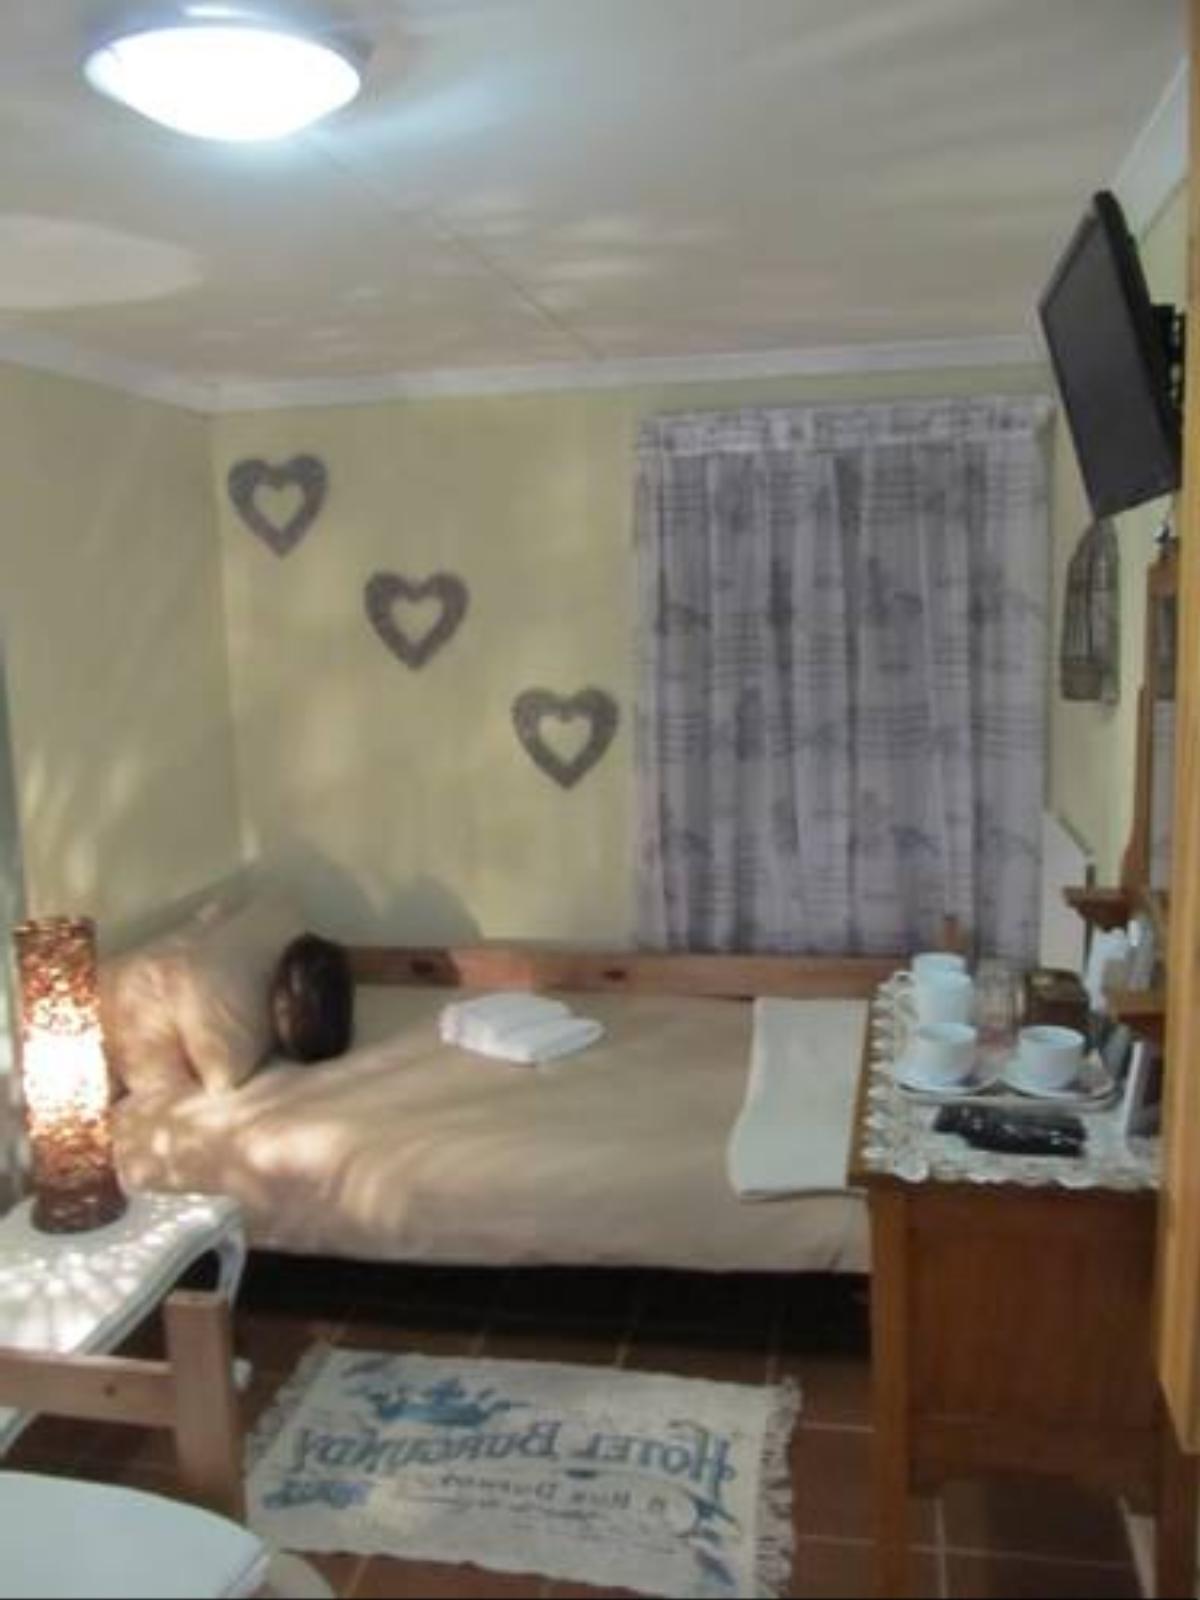 Avondrust Guest House Hotel Graaff-Reinet South Africa